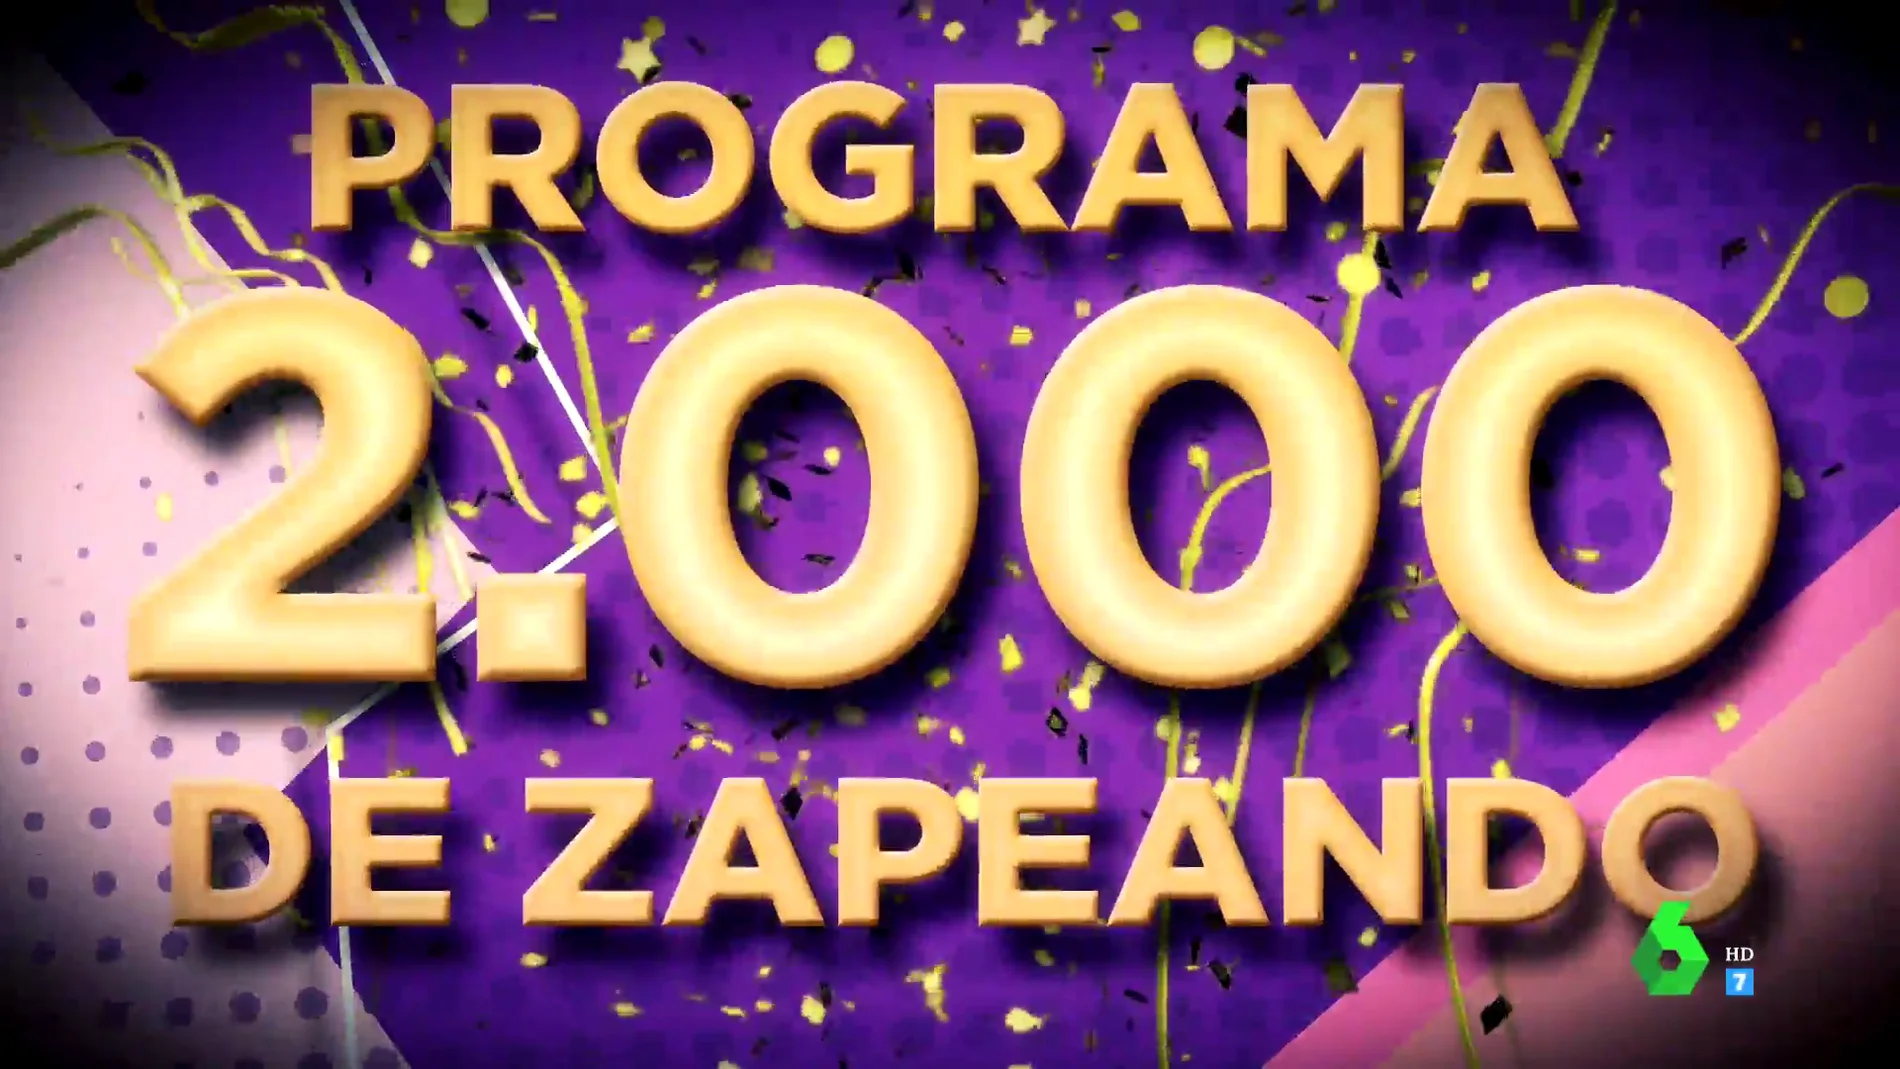 Este viernes Zapeando celebra sus 2000 programas con un programa nunca visto: ¡prepárate para la gran fiesta sorpresa!